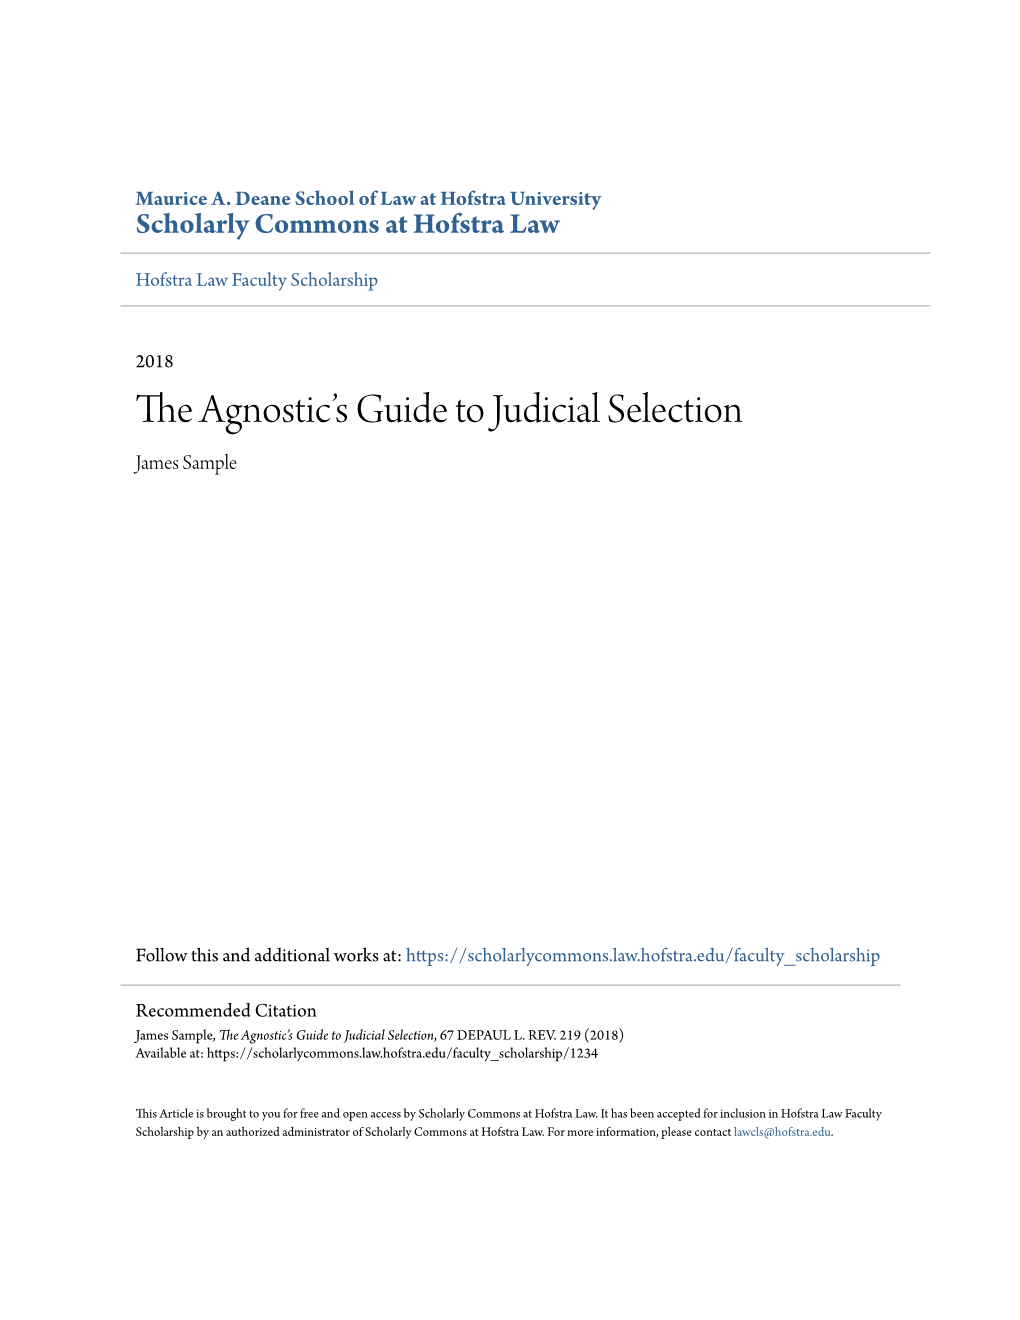 The Agnosticâ•Žs Guide to Judicial Selection